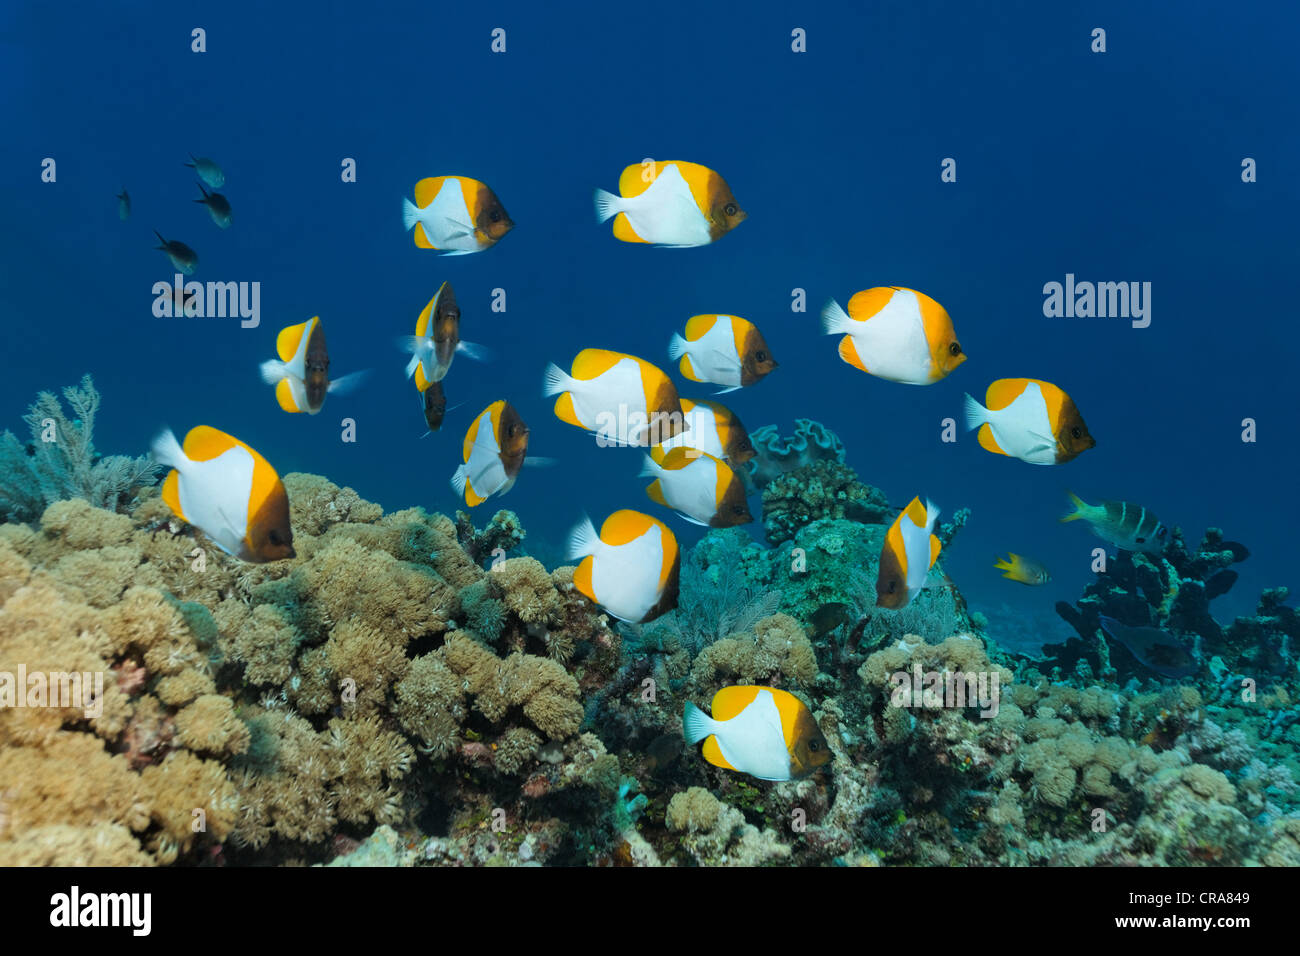 Banc de papillons pyramide jaune (Hemitaurichthys polylepis) nager au-dessus d'une barrière de corail, Grande Barrière de Corail Banque D'Images